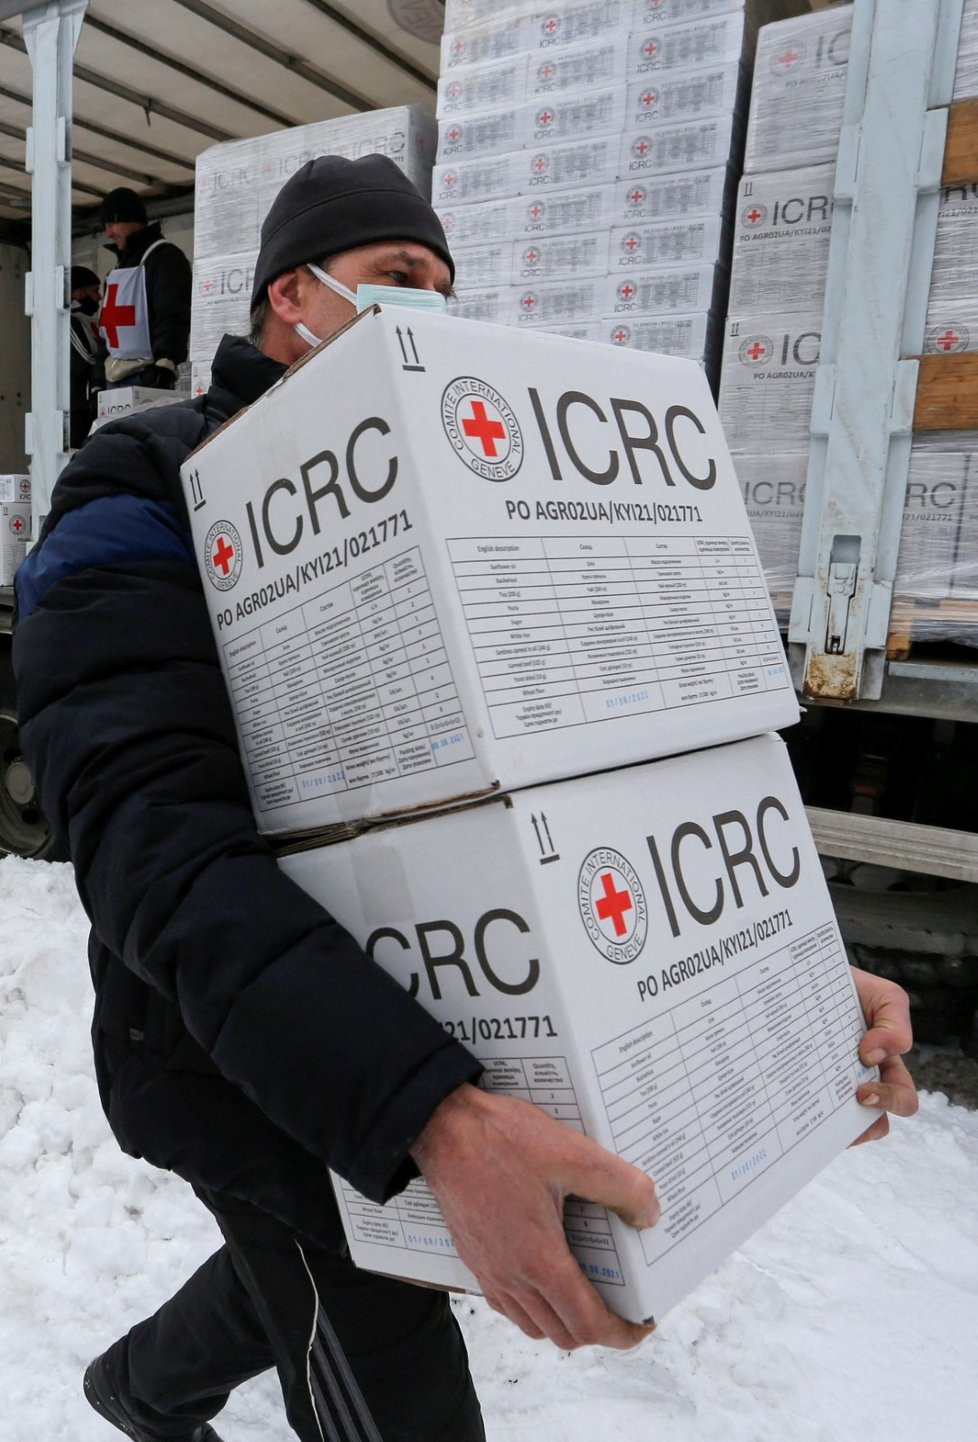 Humanitární pomoc Mezinárodního červeného kříže obyvatelům Horlivky, ovládané rebely.